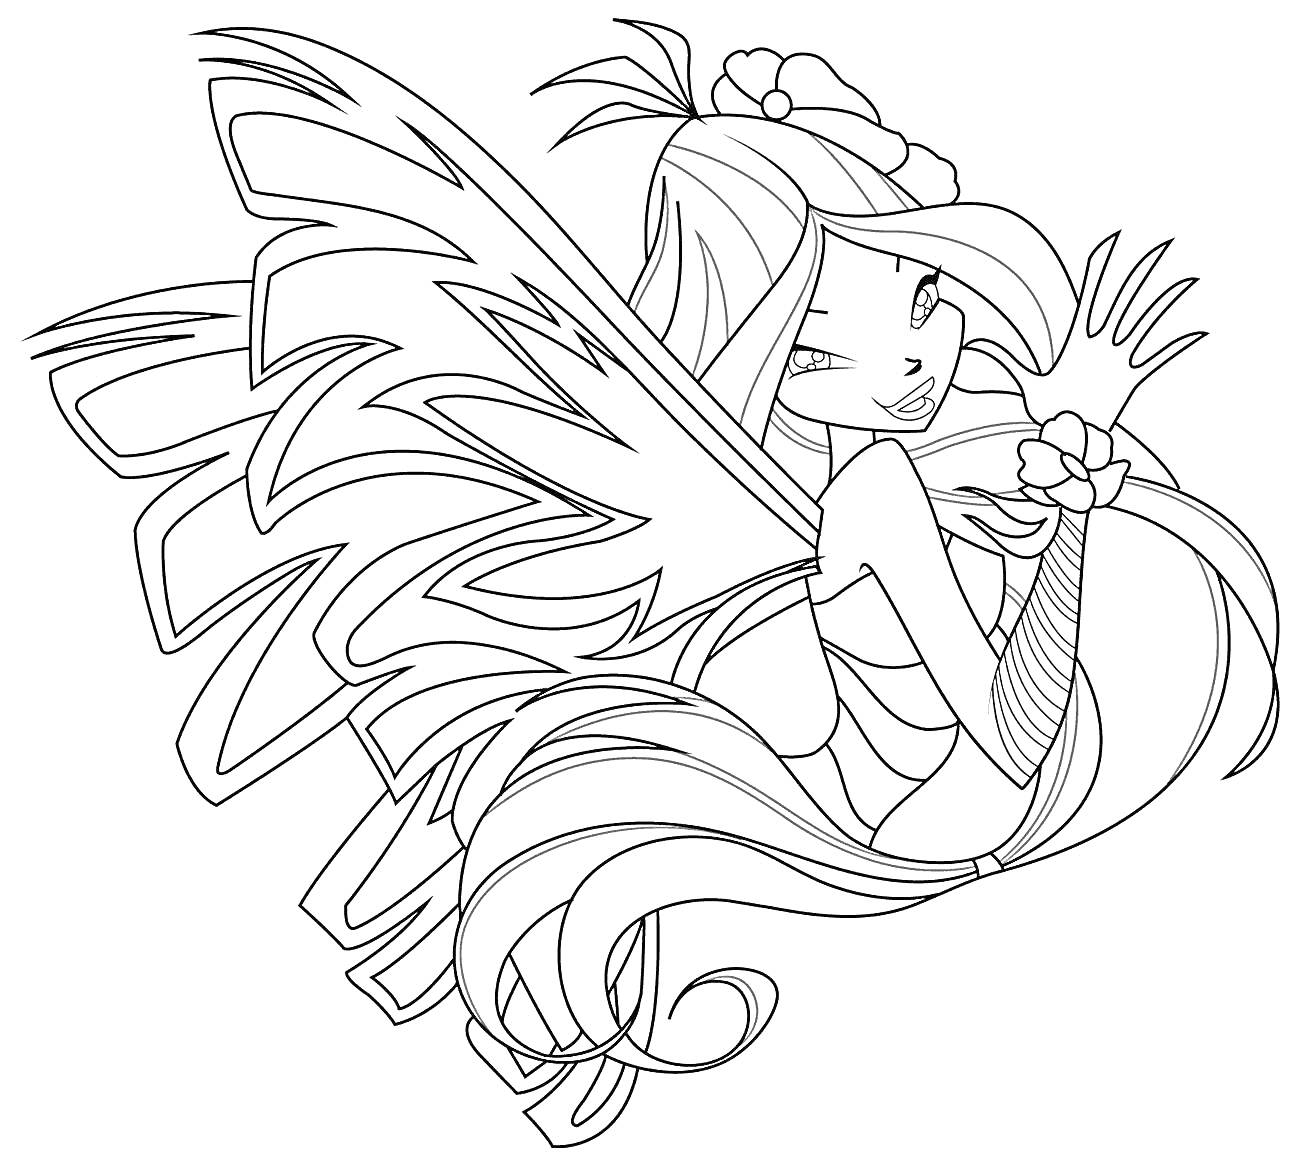 Фея Винкс в сиреникс форме с длинными волосами, большими крыльями, цветком в волосах и нарукавником с цветочным узором.